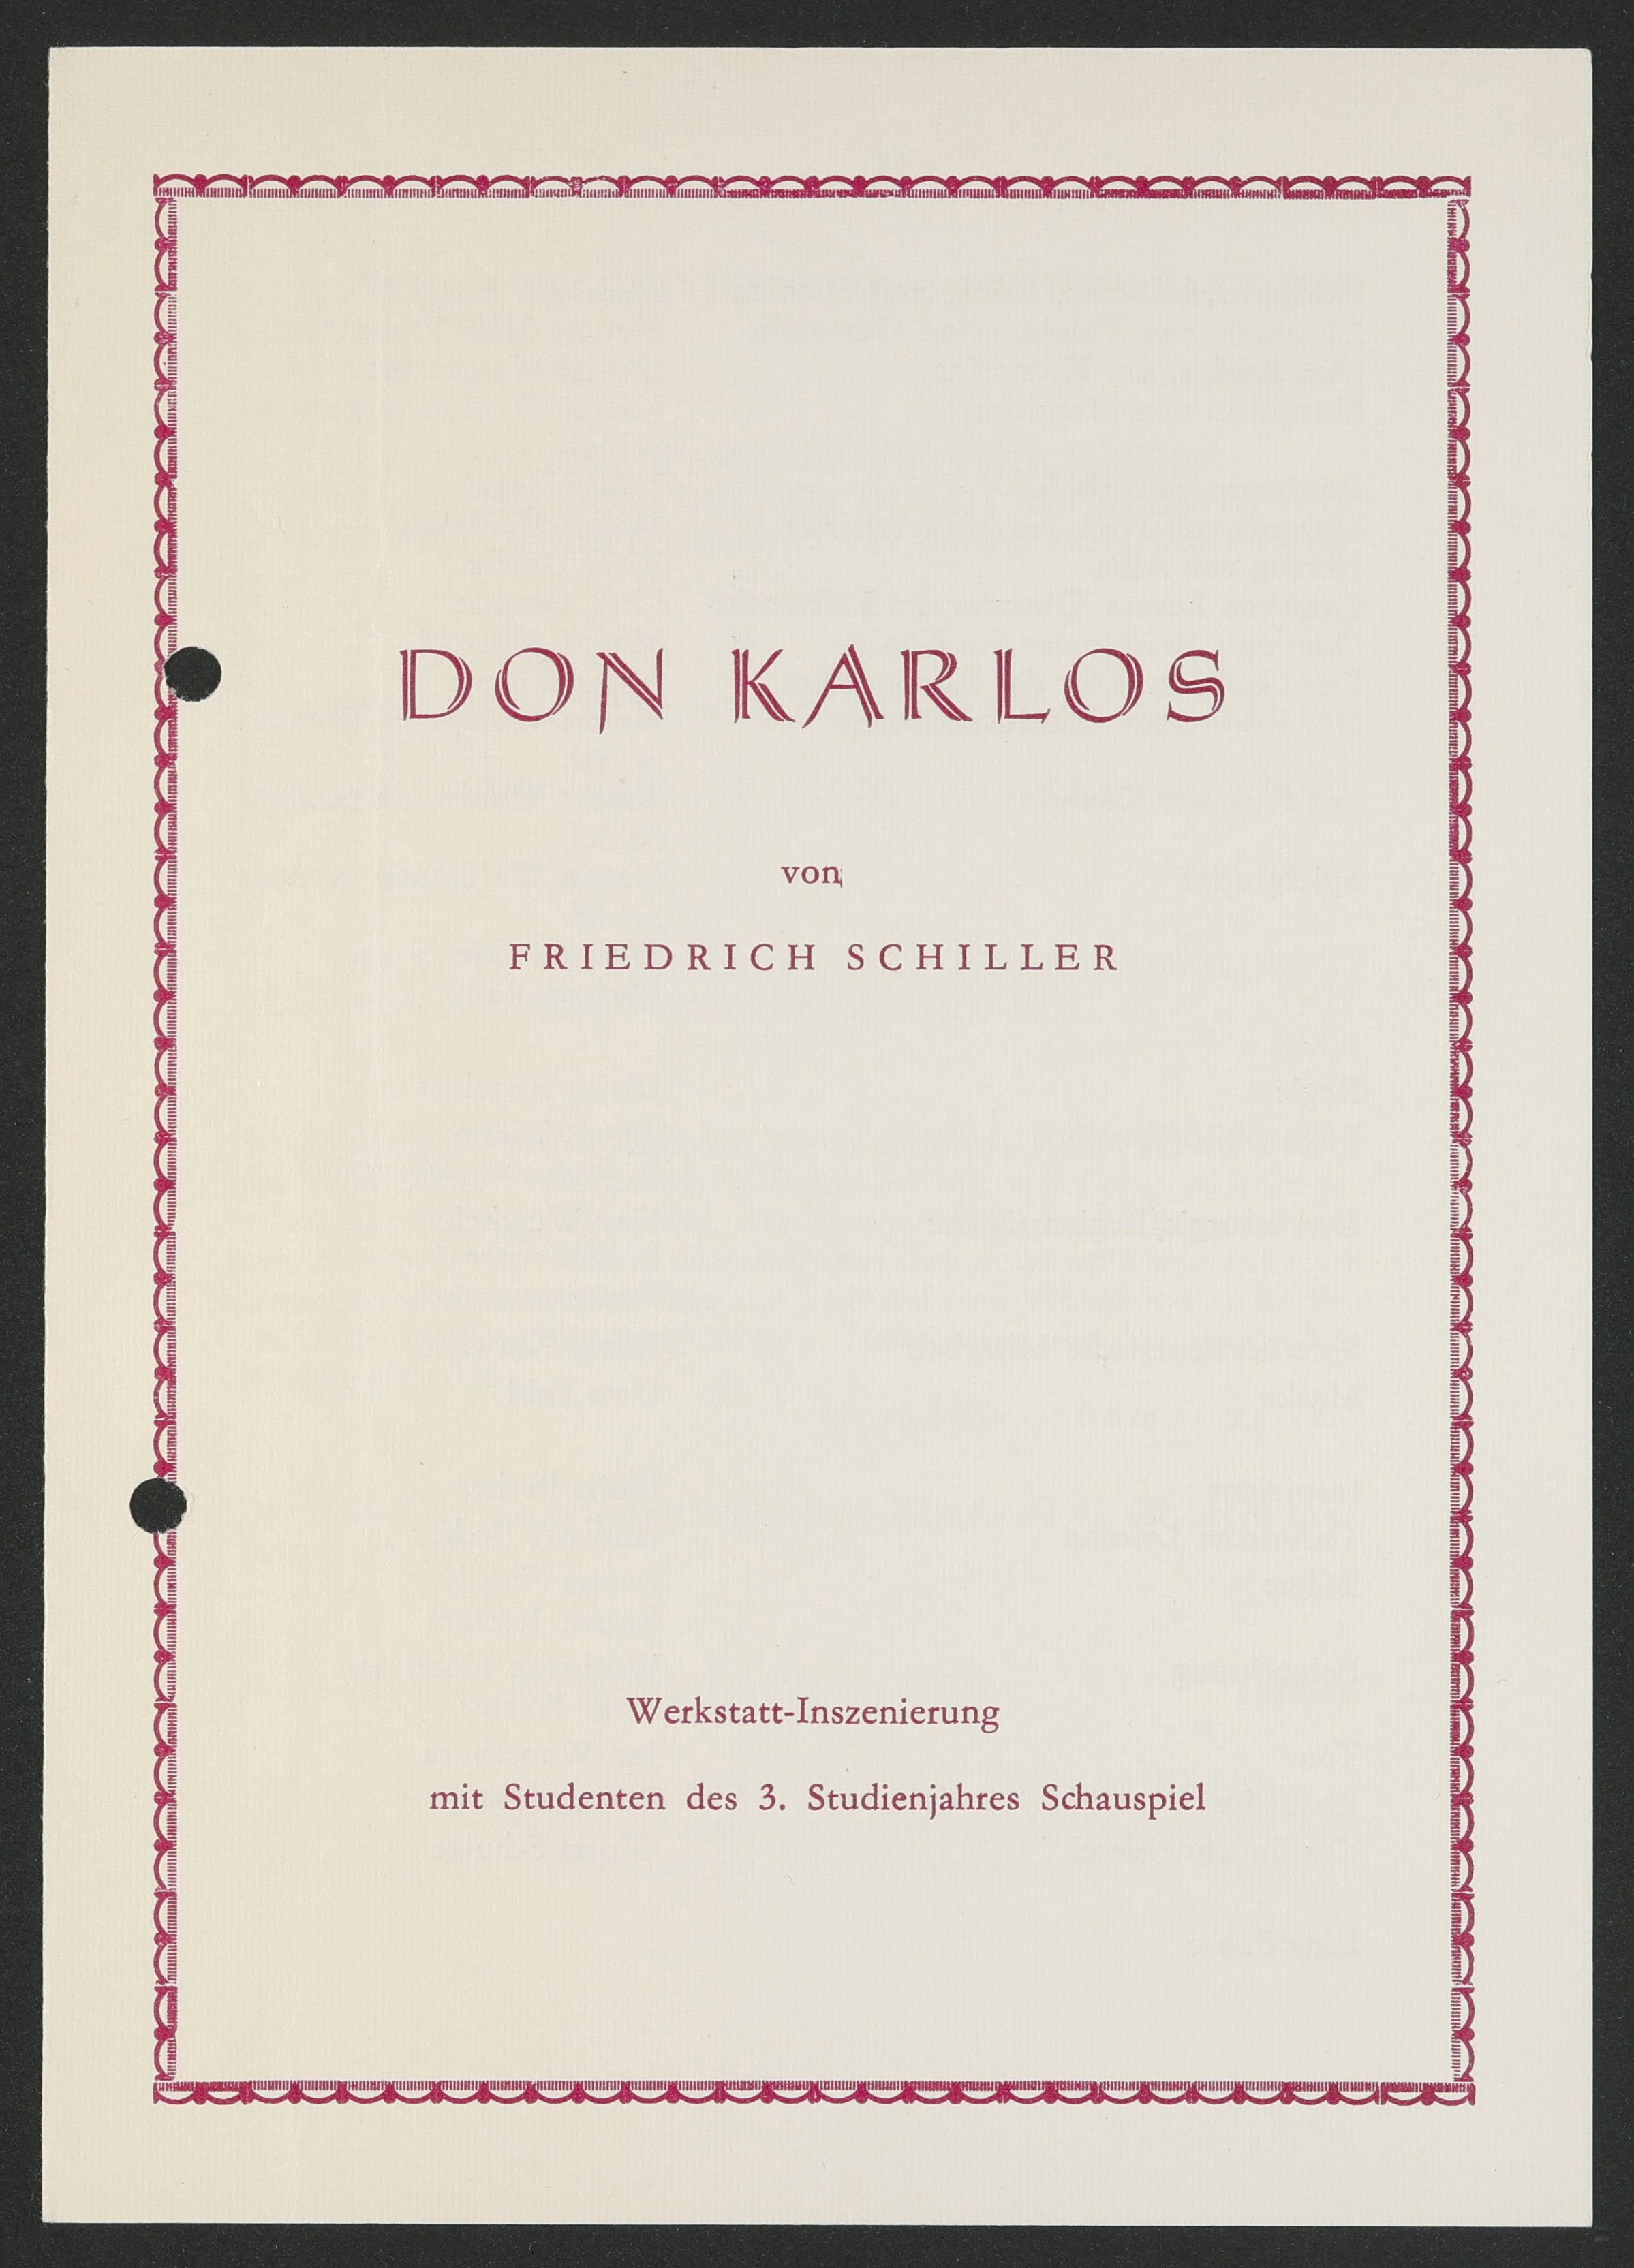 Programmheft zu "Don Karlos" am bat-Studiotheater 1989 (Hochschule für Schauspielkunst Ernst Busch Berlin RR-F)